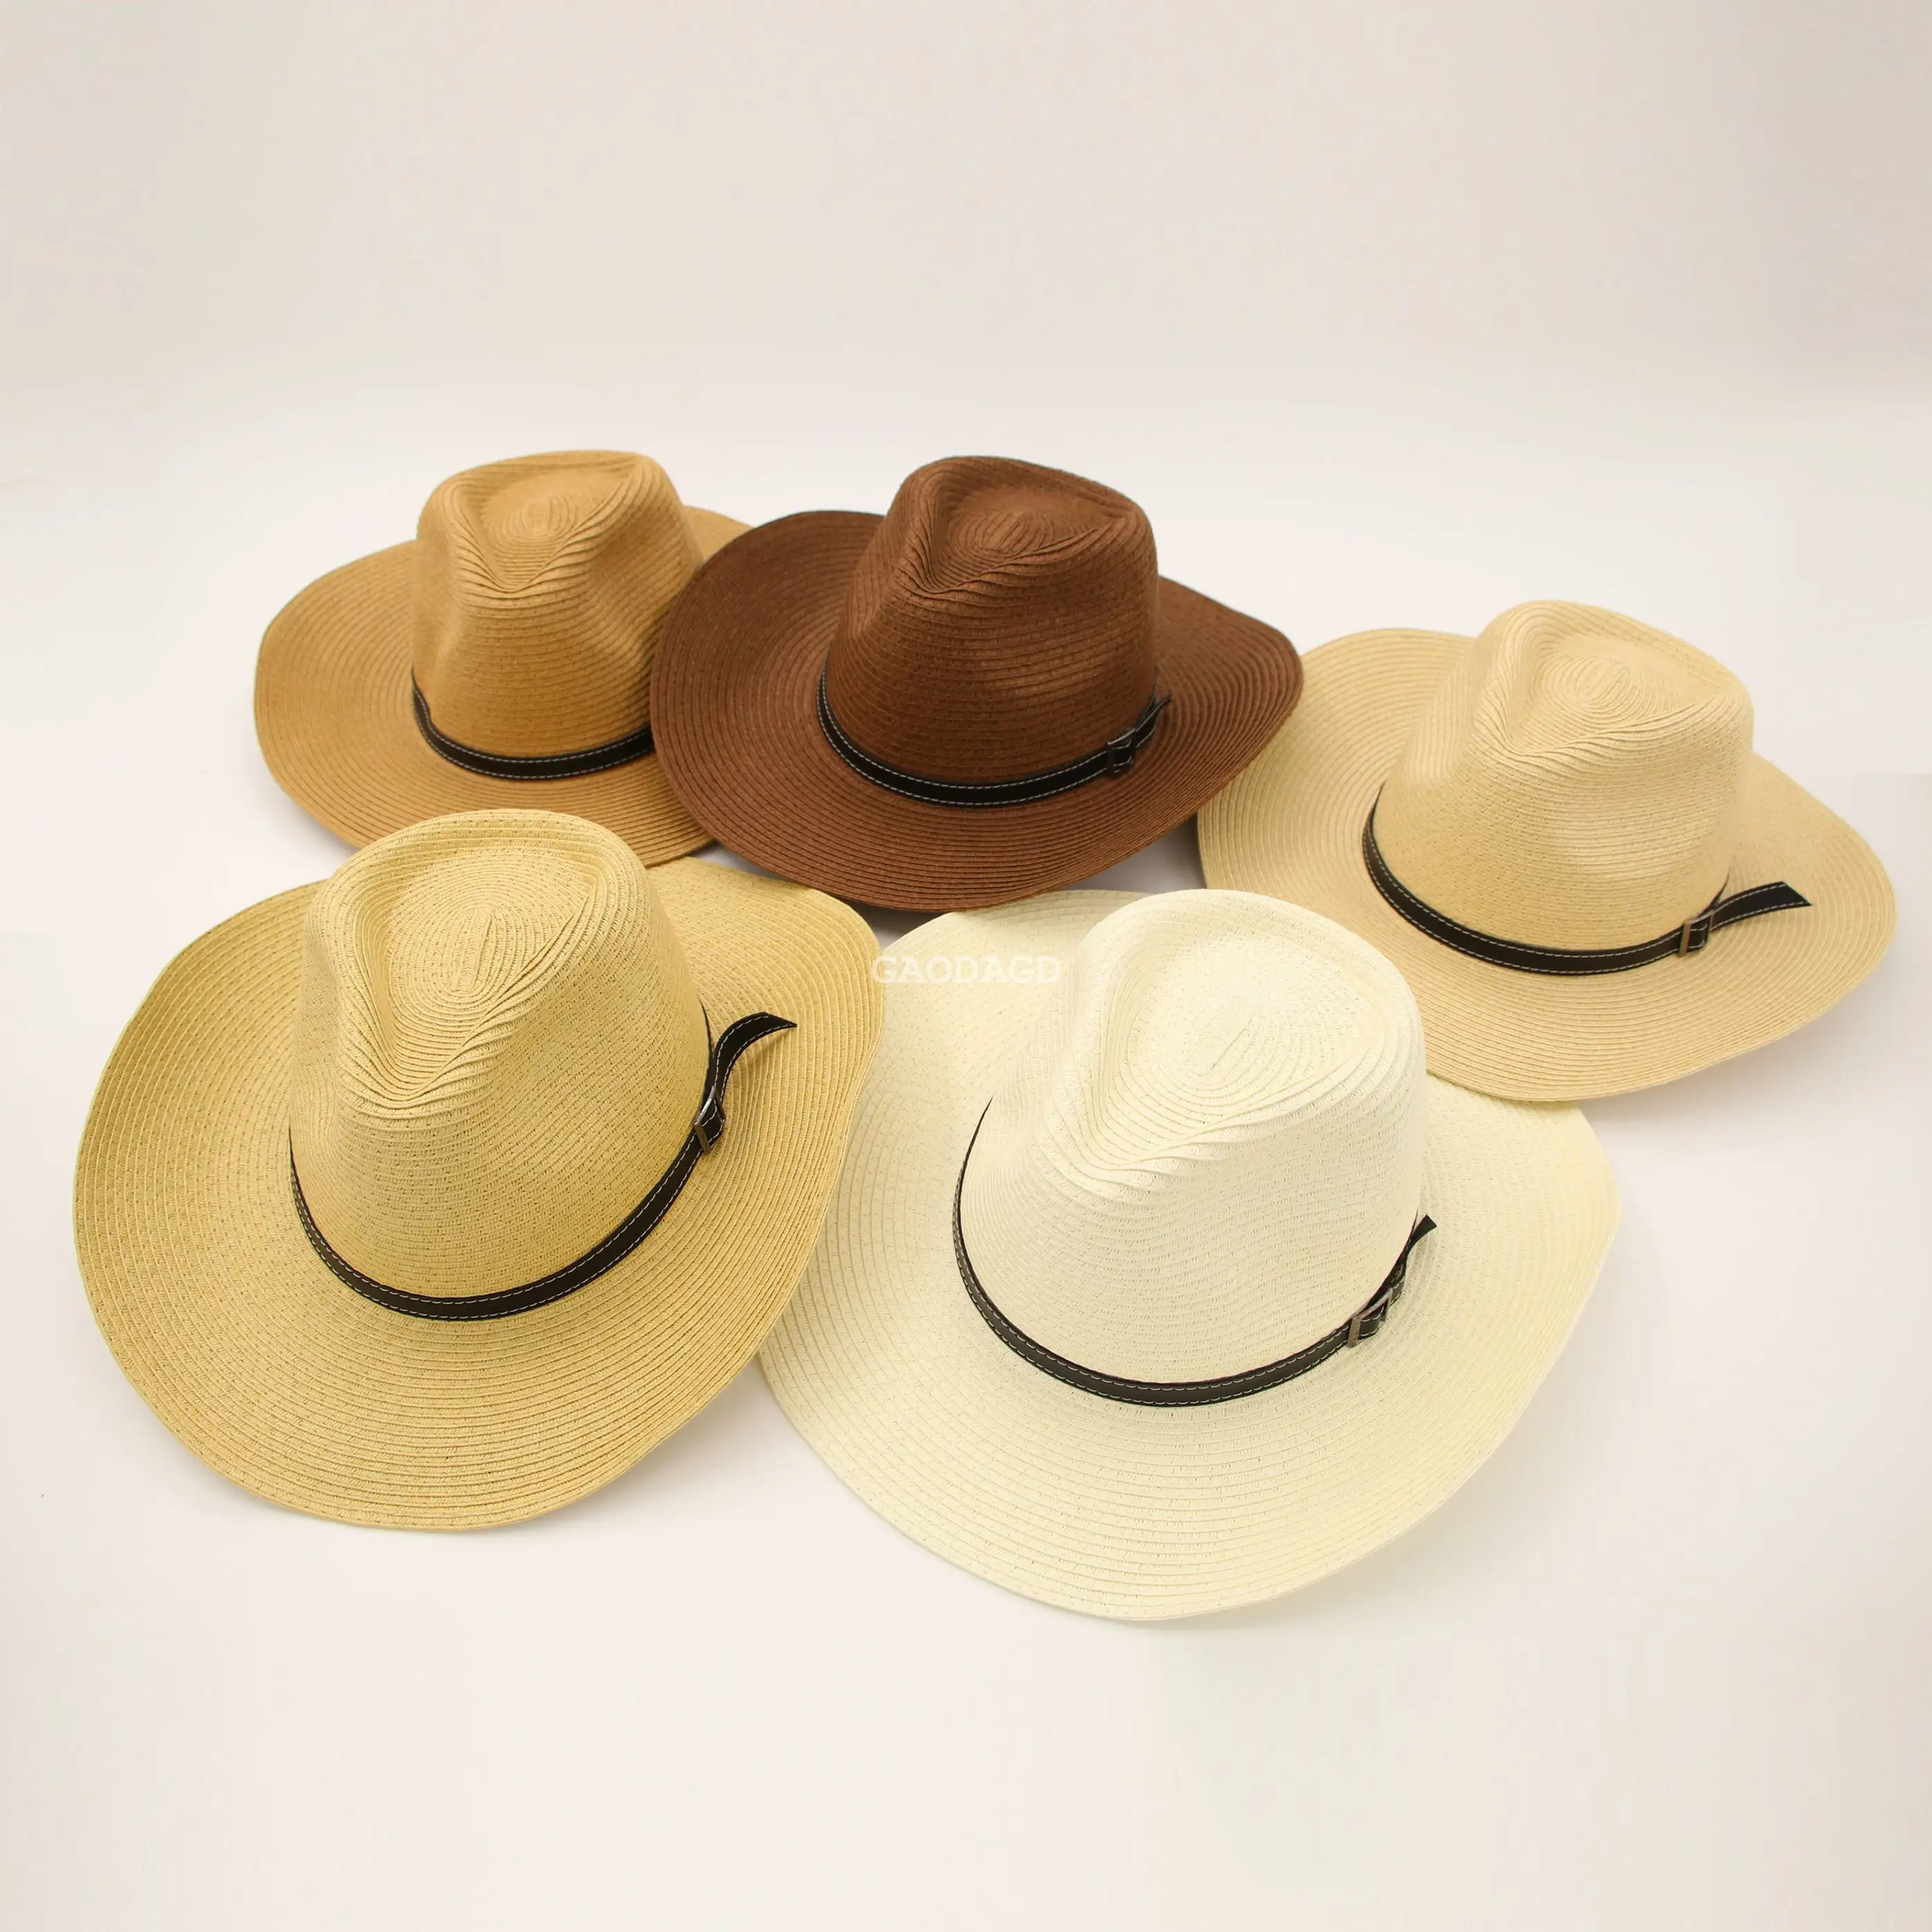 D toplu yeni batı tarzı kovboy şapkası çok renkli kağıt örgü Unisex için büyük ağız ile kovboy şapkası